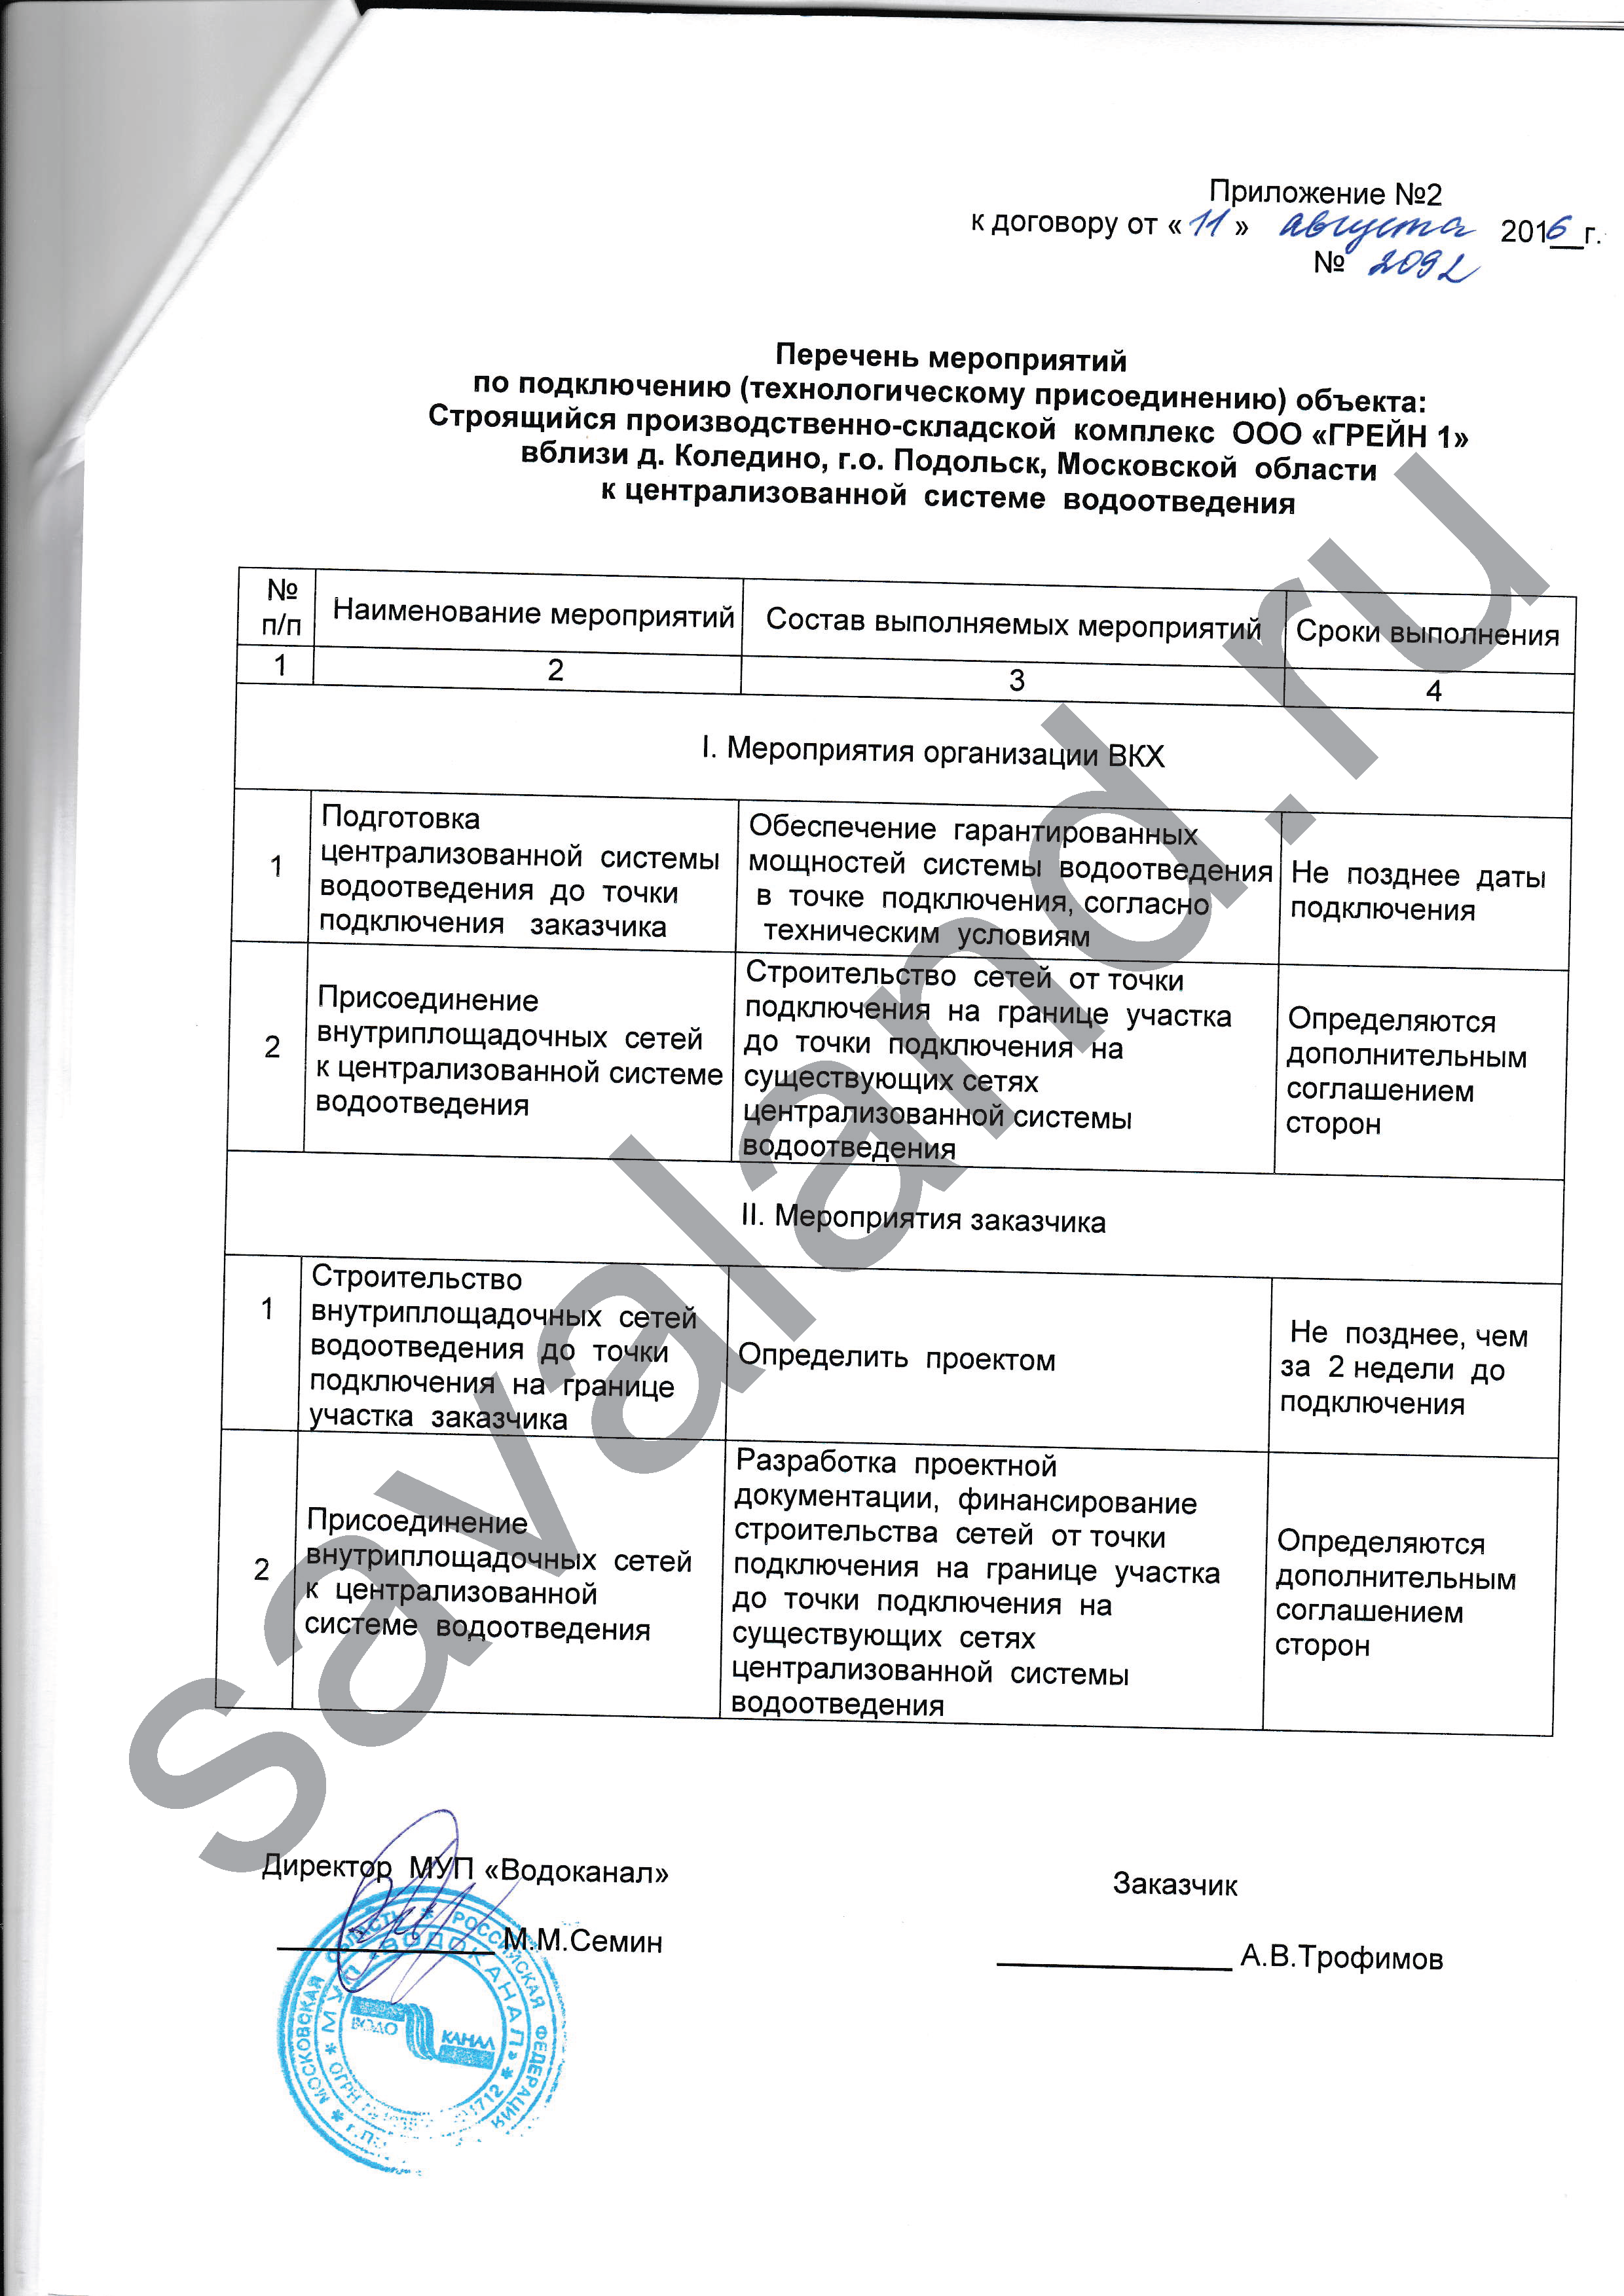 Перечень мероприятий для подключения канализации в Московской области